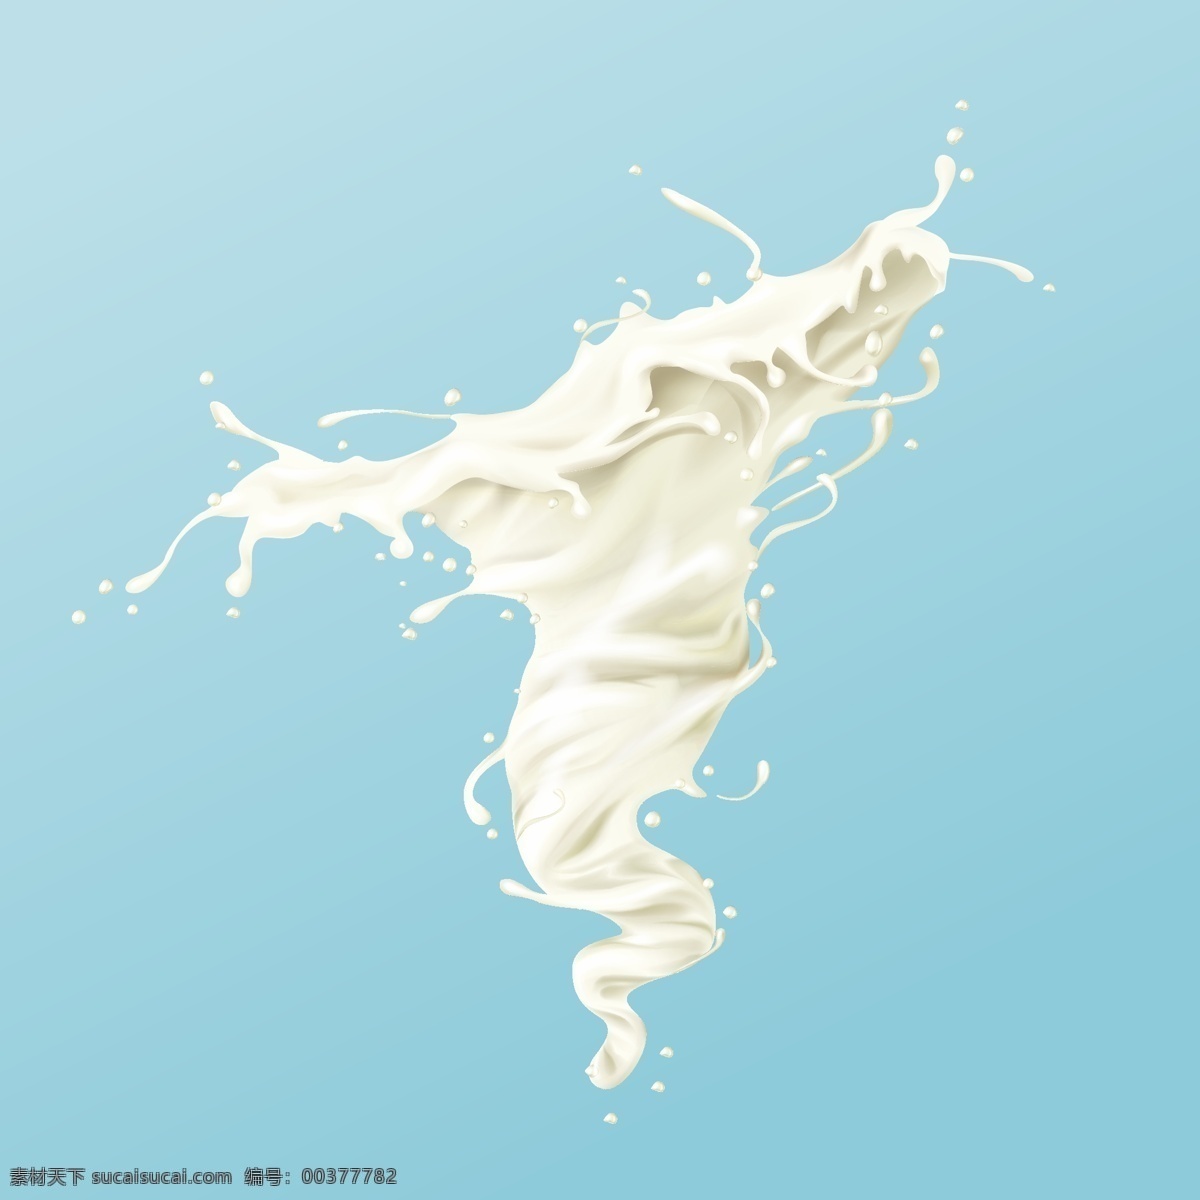 奶花 奶 旋窝 牛奶 水果 牛奶海报 牛奶广告 牛奶素材 饮料 美食 果汁 广告 海报 奶制品 酸奶 水纹 水波 水滴 水 液体 浪花